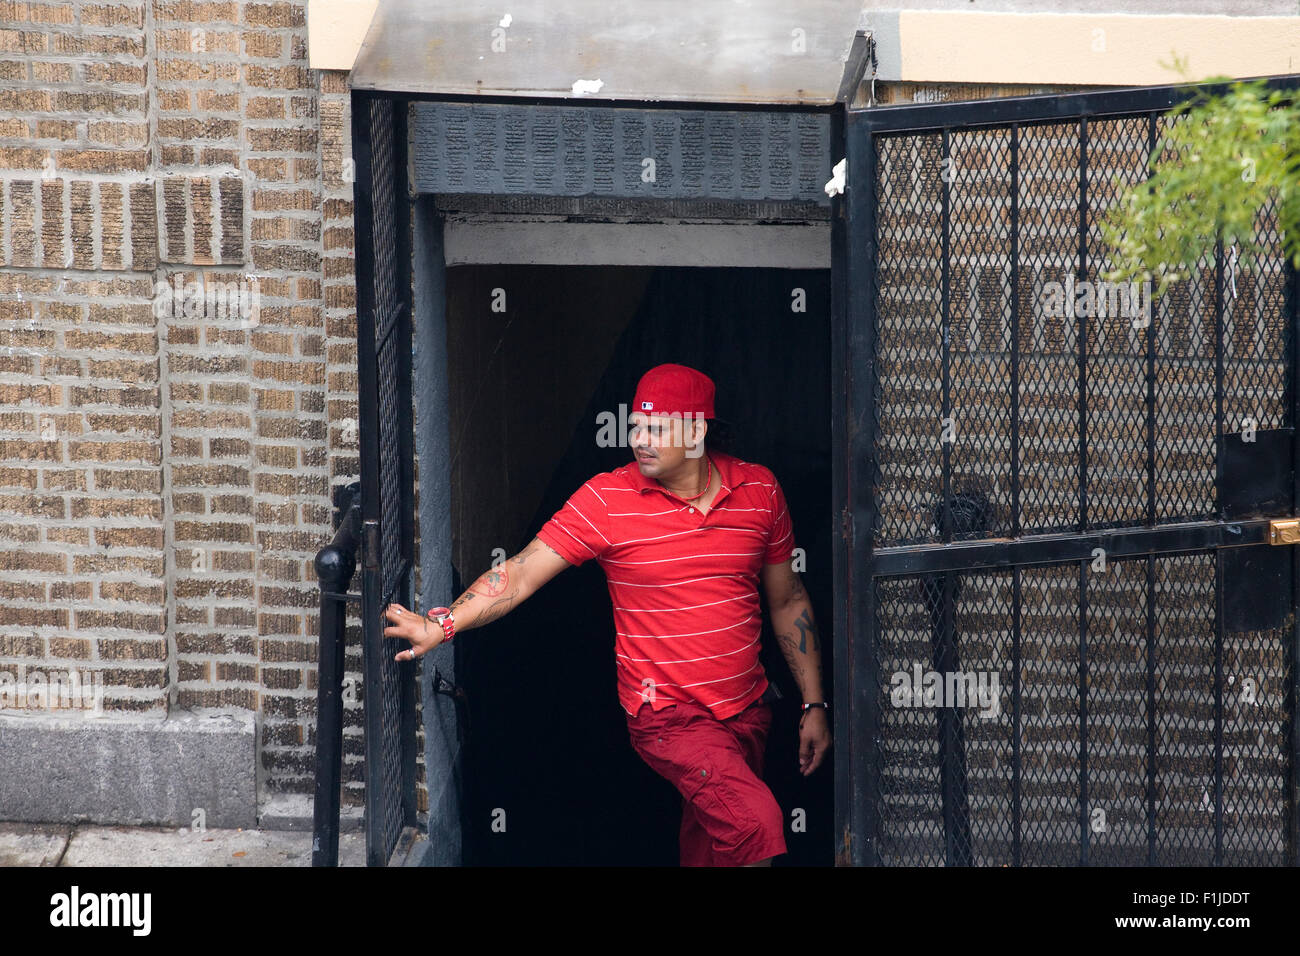 Hispanic Mitglied der Straßengang "Bloods" gekleidet in rot stehen heimlich in ein Zugangsstollen eines Mehrfamilienhauses. Stockfoto